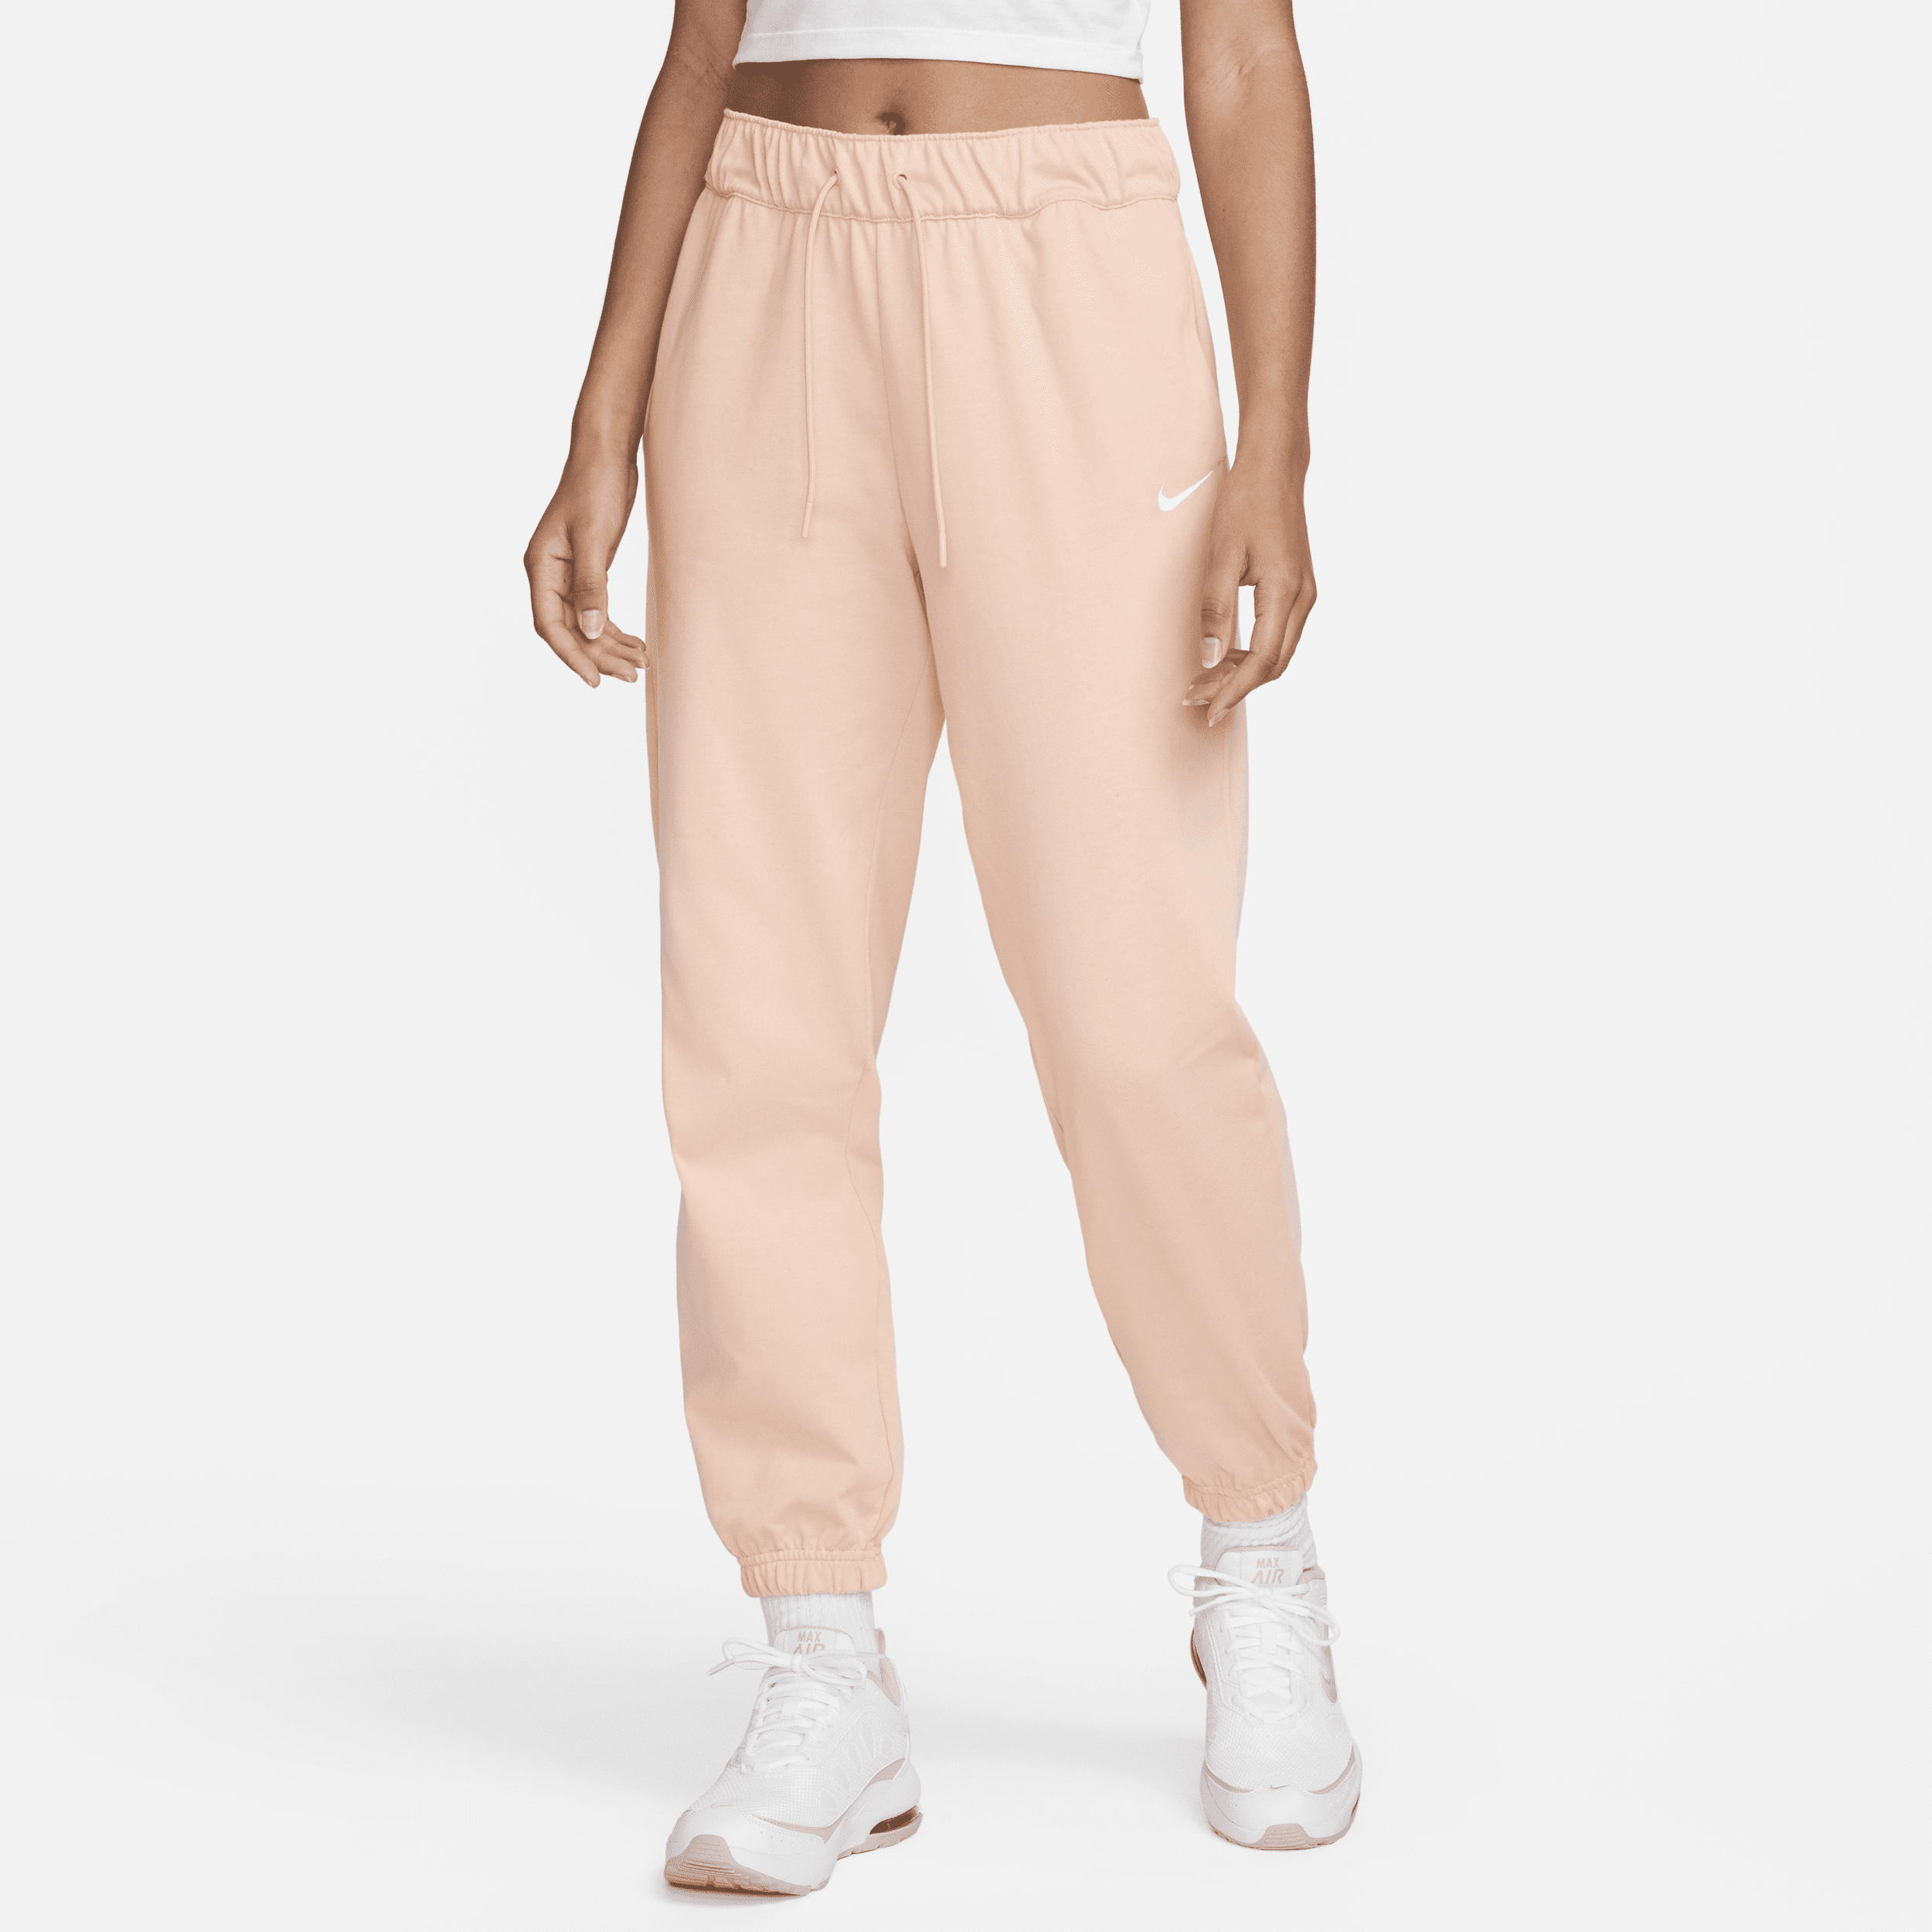 Women's Nike Sportswear Easy Jogger Pants in Pink, Size: Medium | DM6419-800